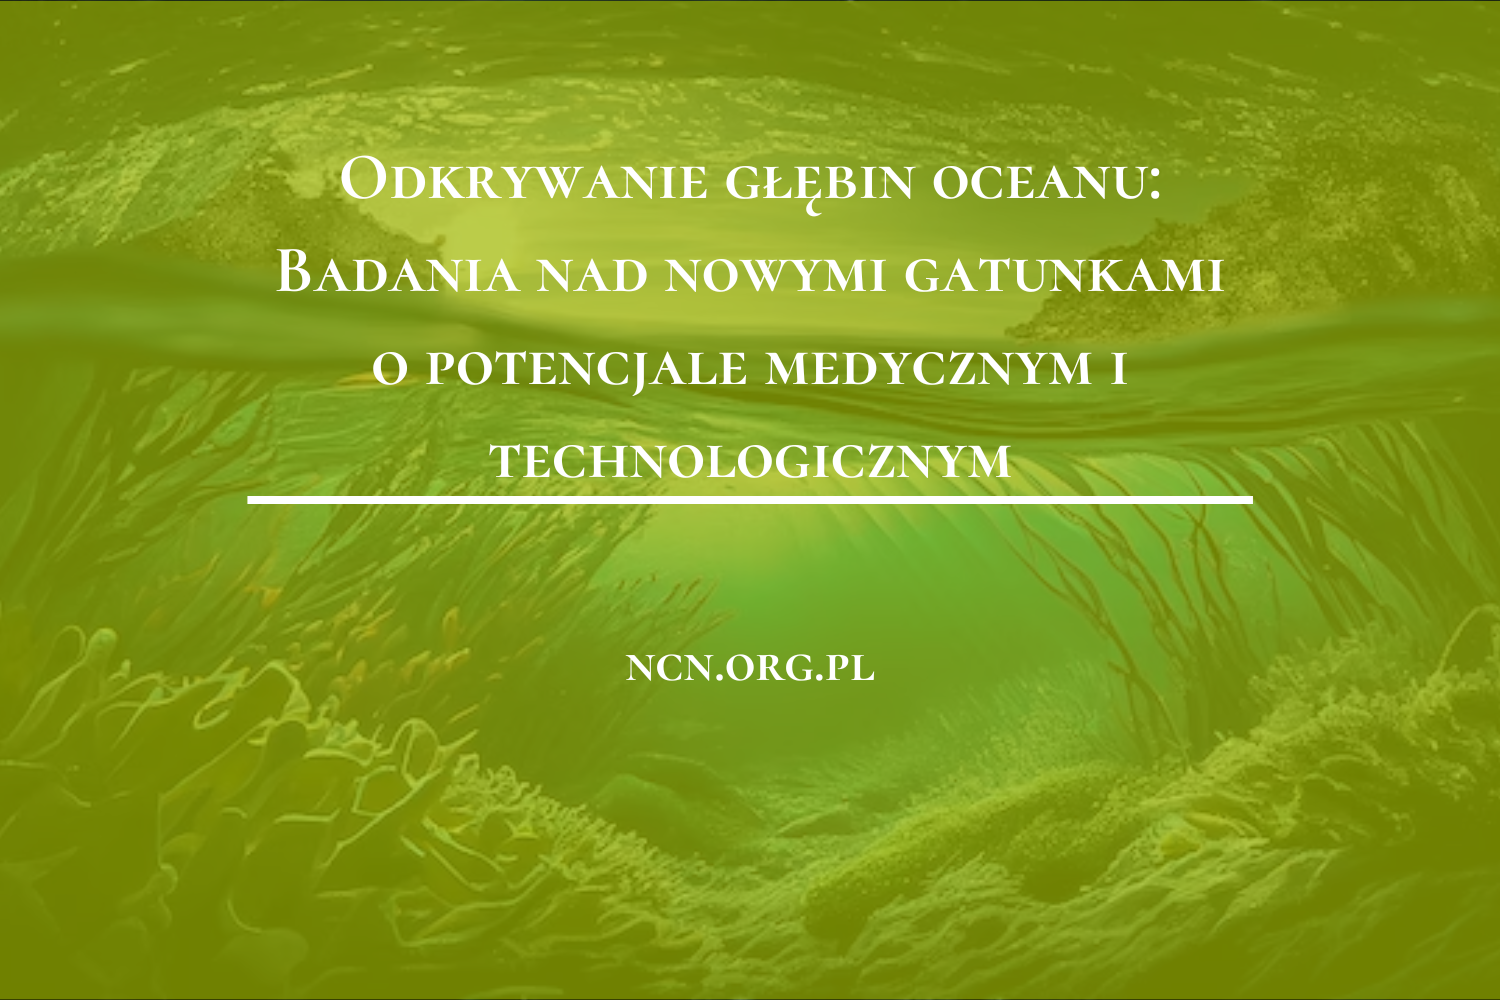 Odkrywanie głębin oceanu: Badania nad nowymi gatunkami o potencjale medycznym i technologicznym